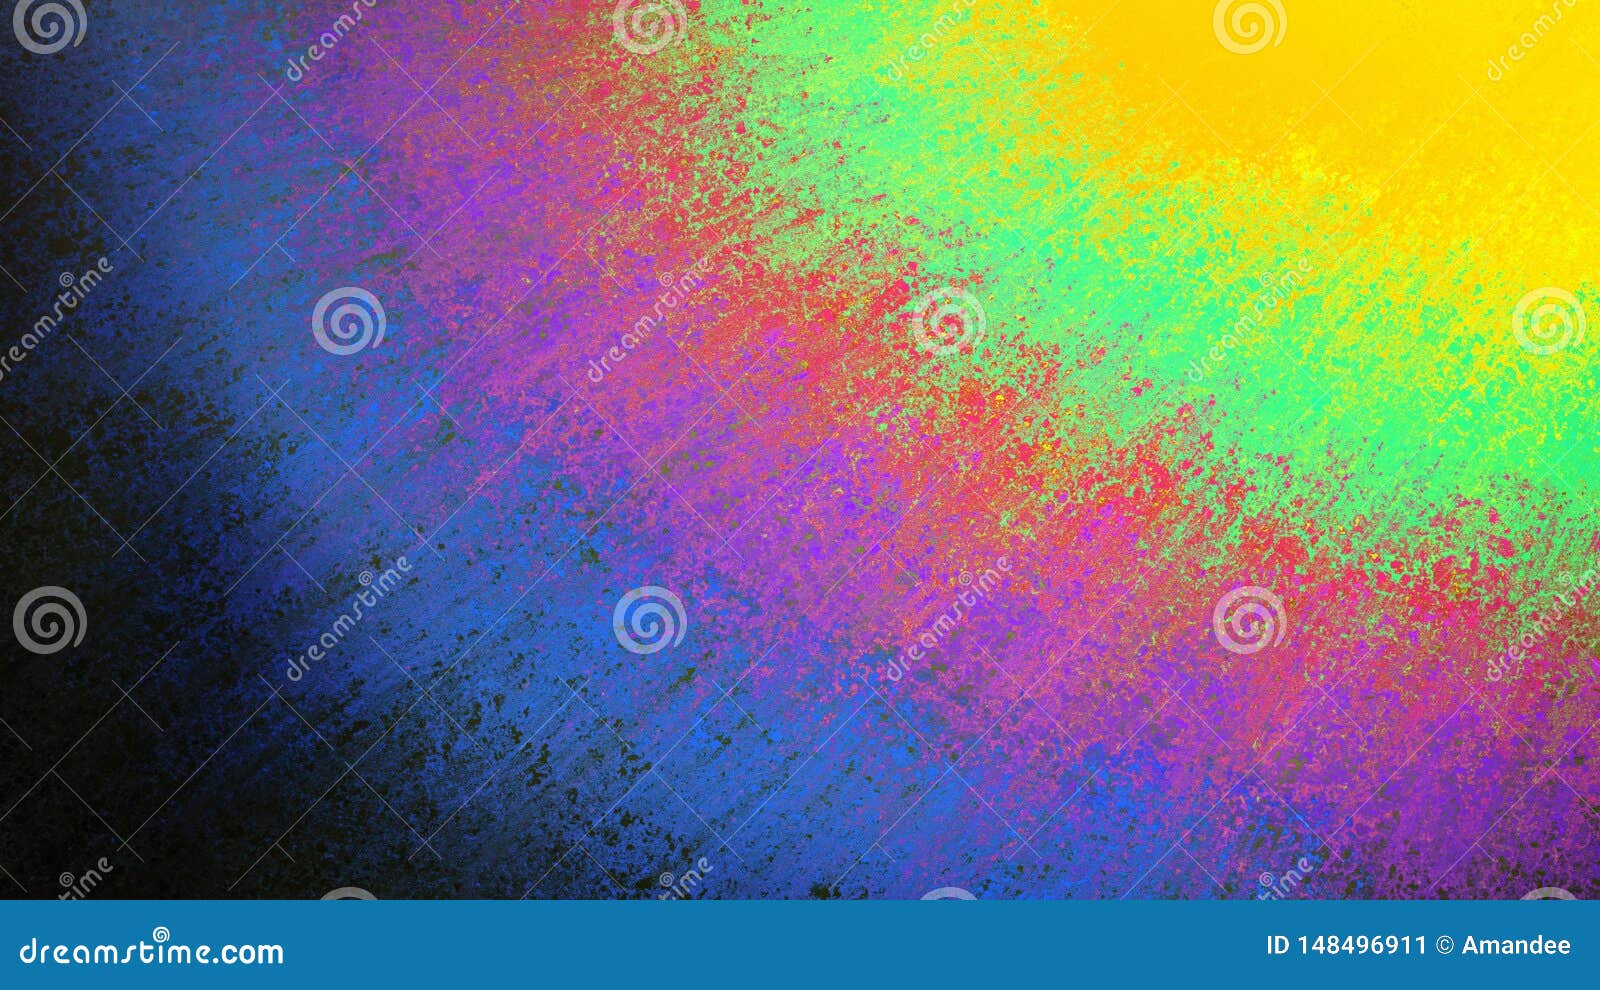 Những vệt màu sắc đầy màu sắc sẽ khiến bạn lỡ bước ngay từ cái nhìn đầu tiên. Chúng tạo nên một không gian độc đáo và quyến rũ được trang trí bởi những màu sắc tươi sáng và bắt mắt. Hãy thưởng thức hình ảnh liên quan để thấy sự hòa quyện hoàn hảo của những vệt màu sắc đầy màu sắc.